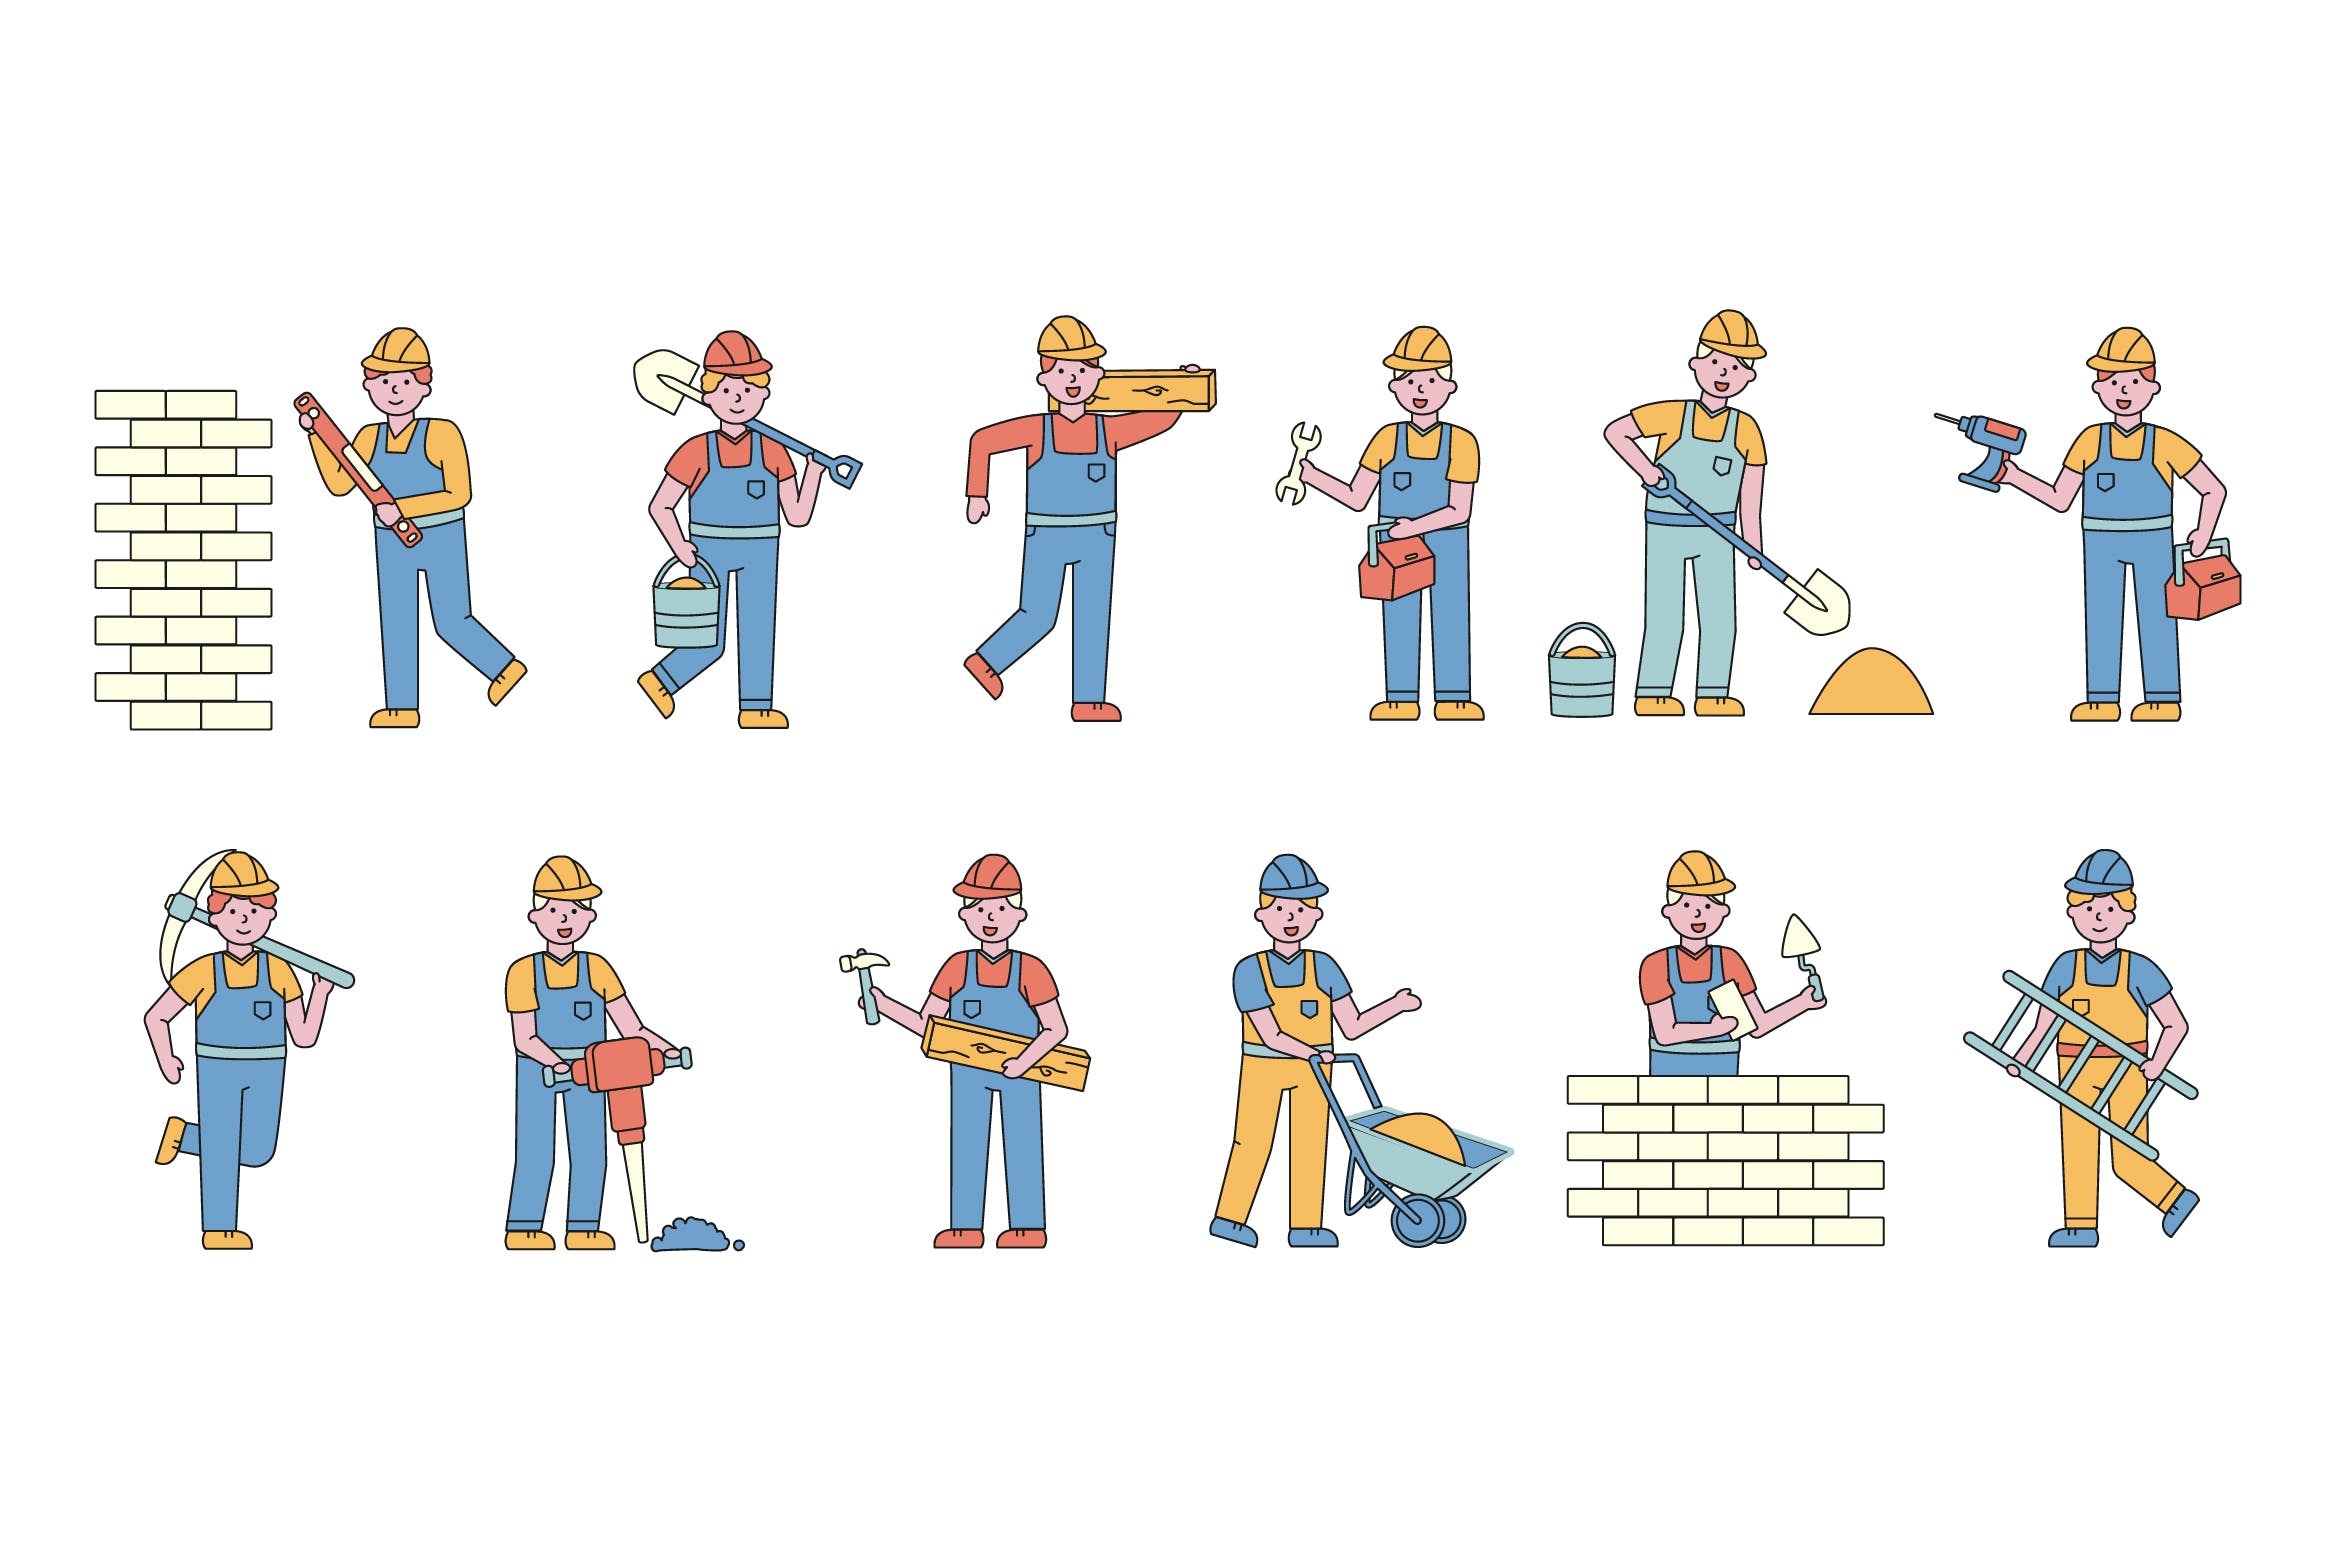 建筑工人人物形象线条艺术矢量插画非凡图库精选素材 Builders Lineart People Character Collection插图